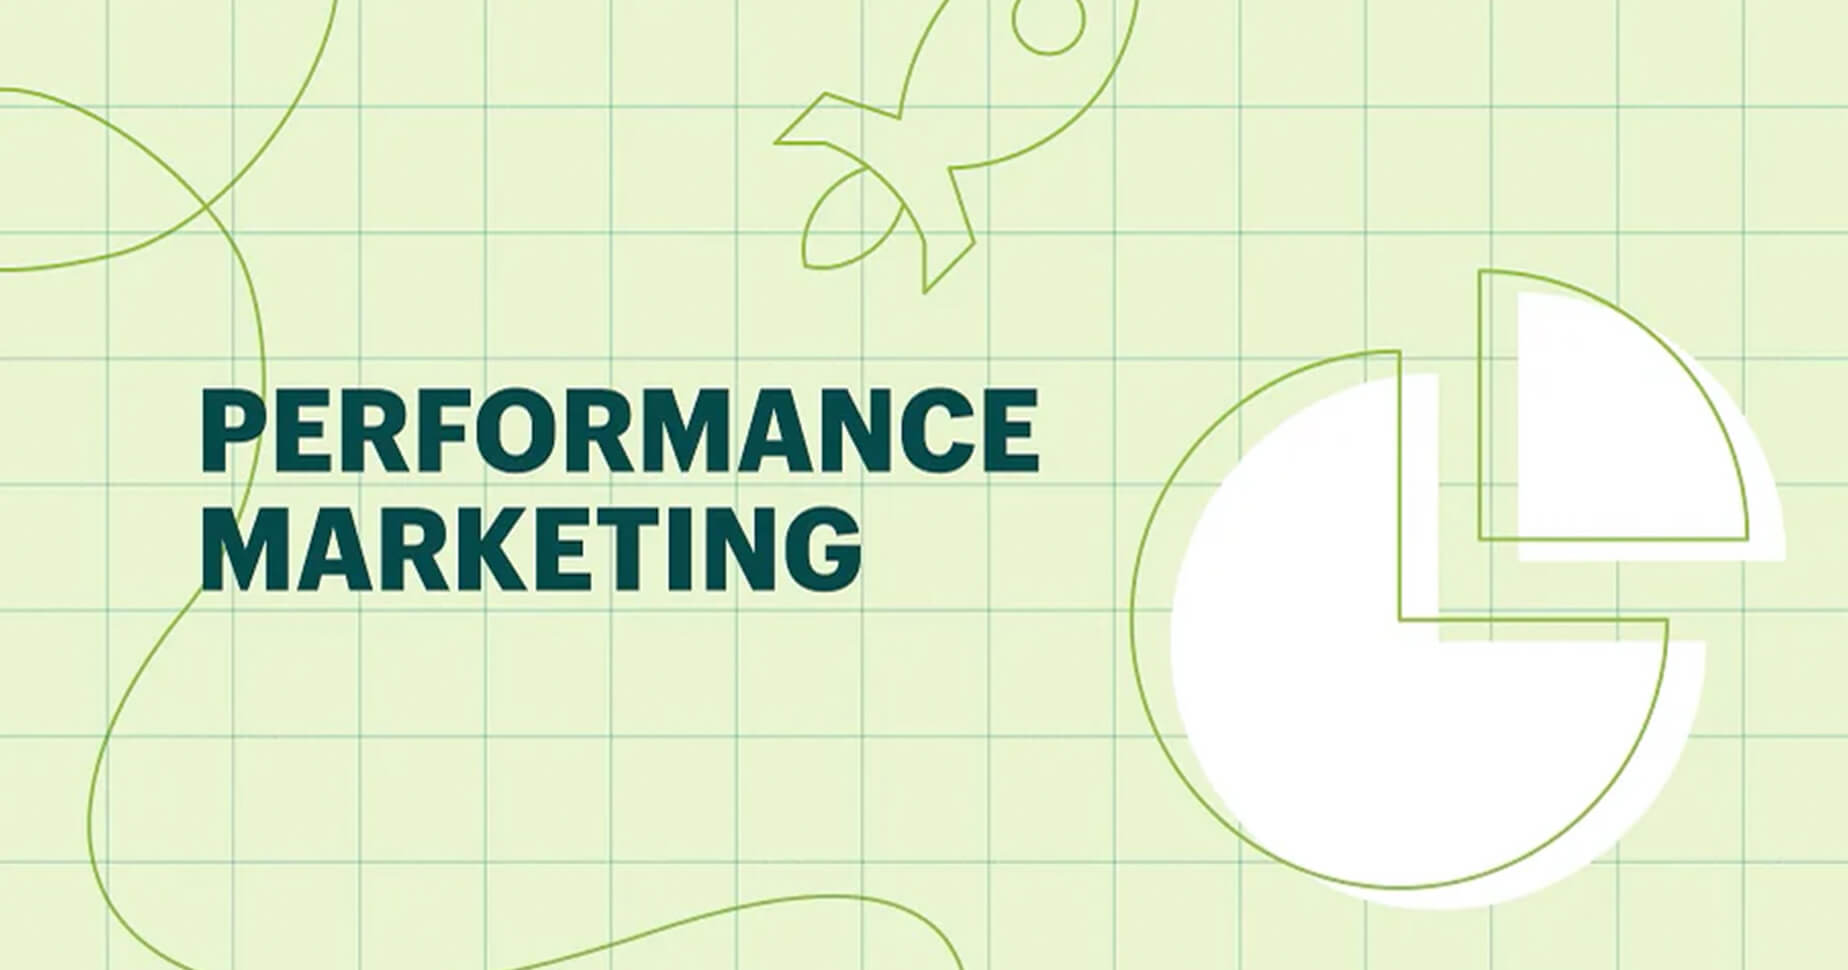 Das Bild zeigt einen schlichten grünen Hintergrund mit verschiedenen Formen und den Schriftzug Performance Marketing.